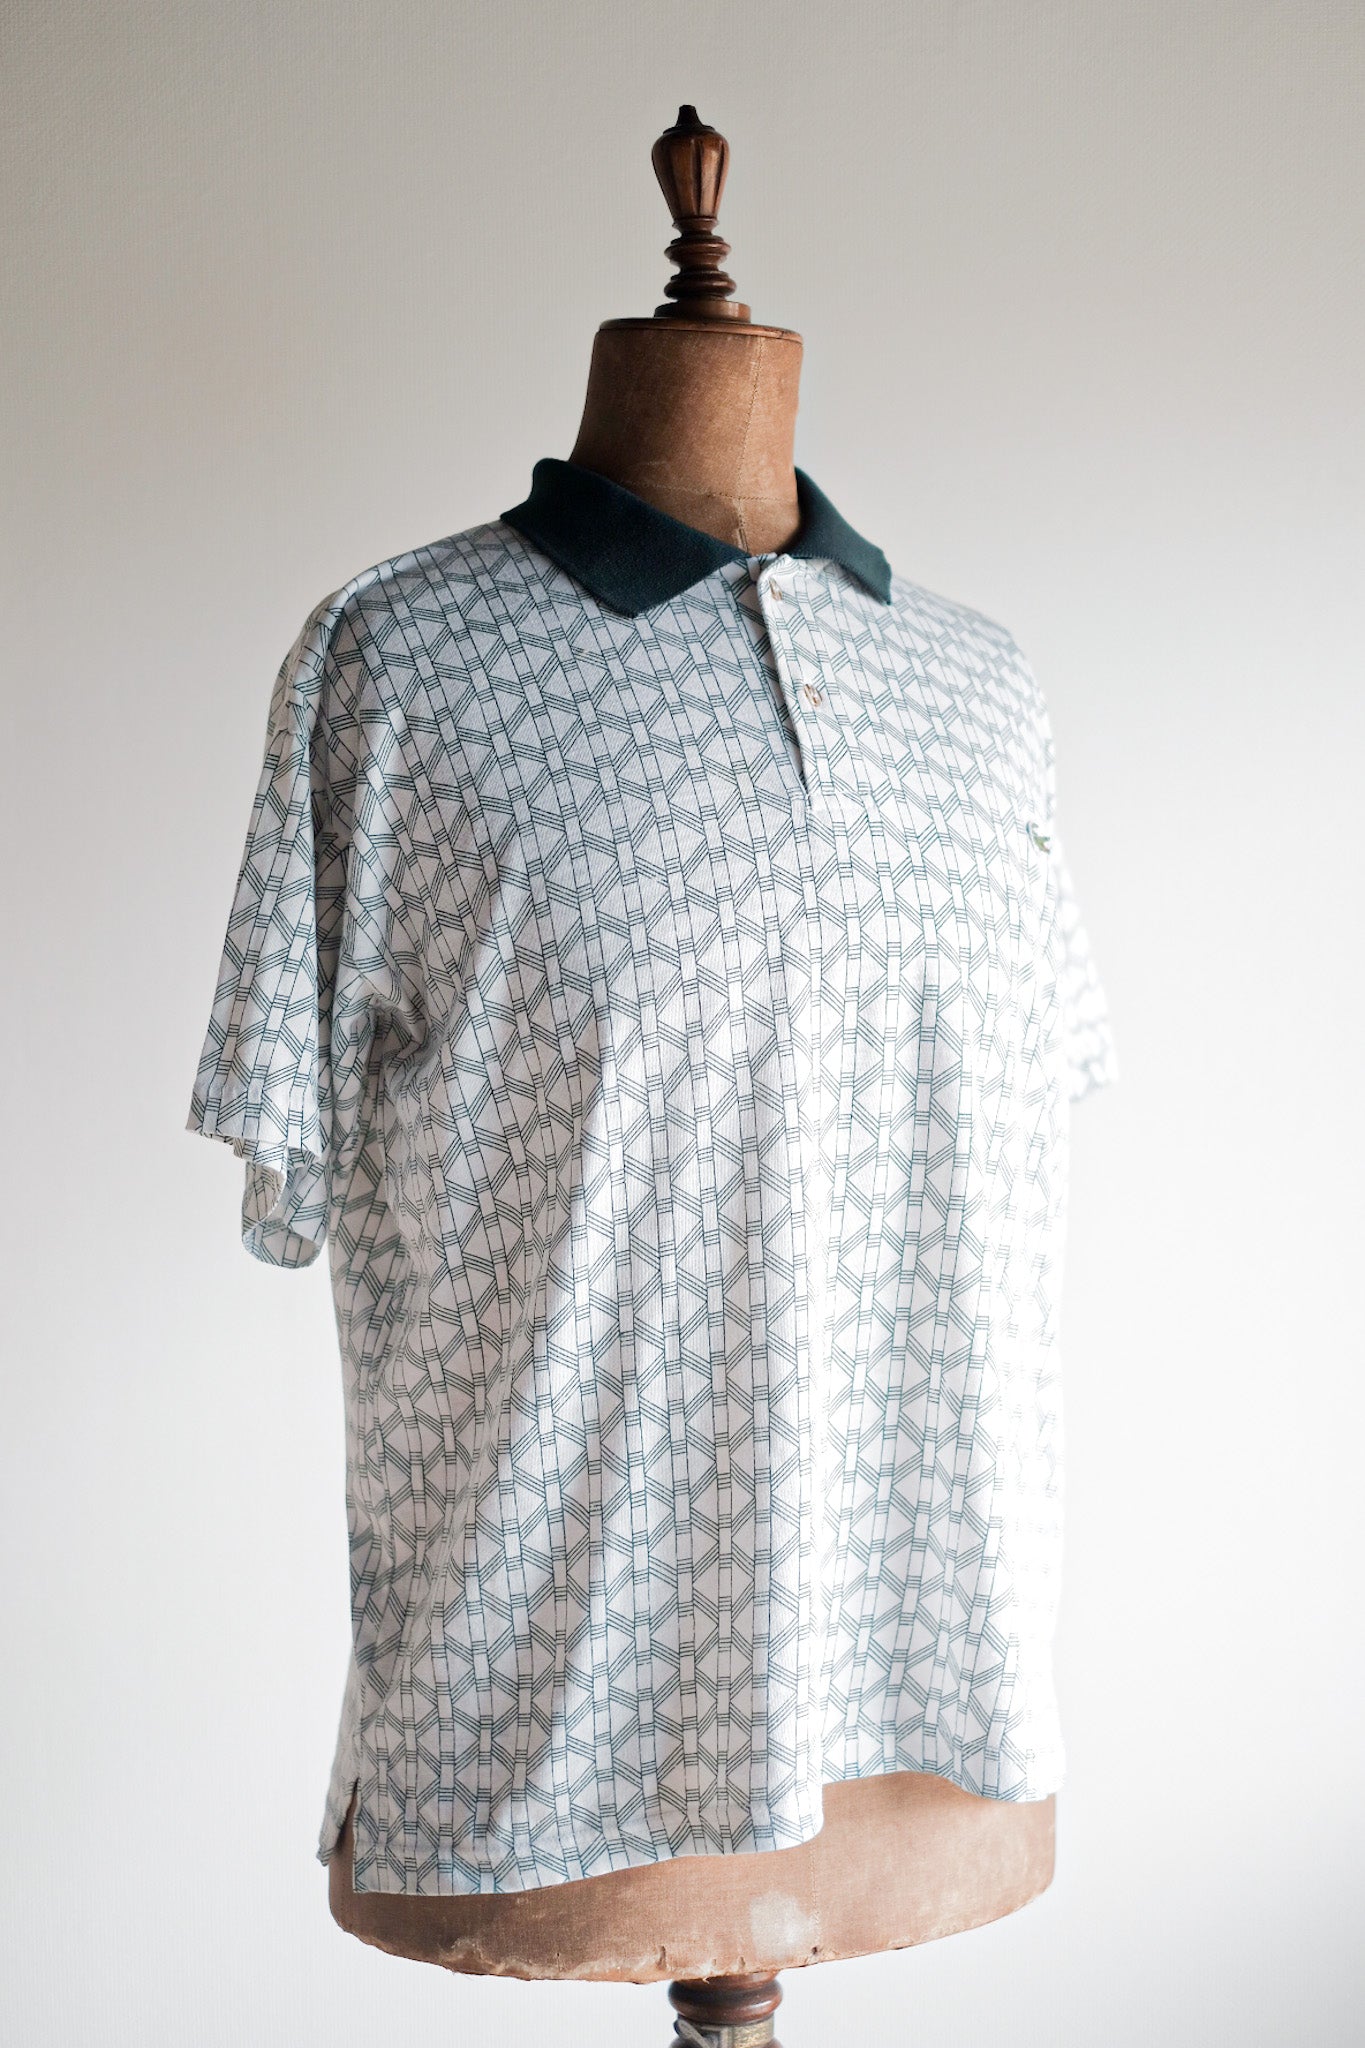 [〜80年代]顏色的lacoste s/s polo襯衫尺寸。5“多色”